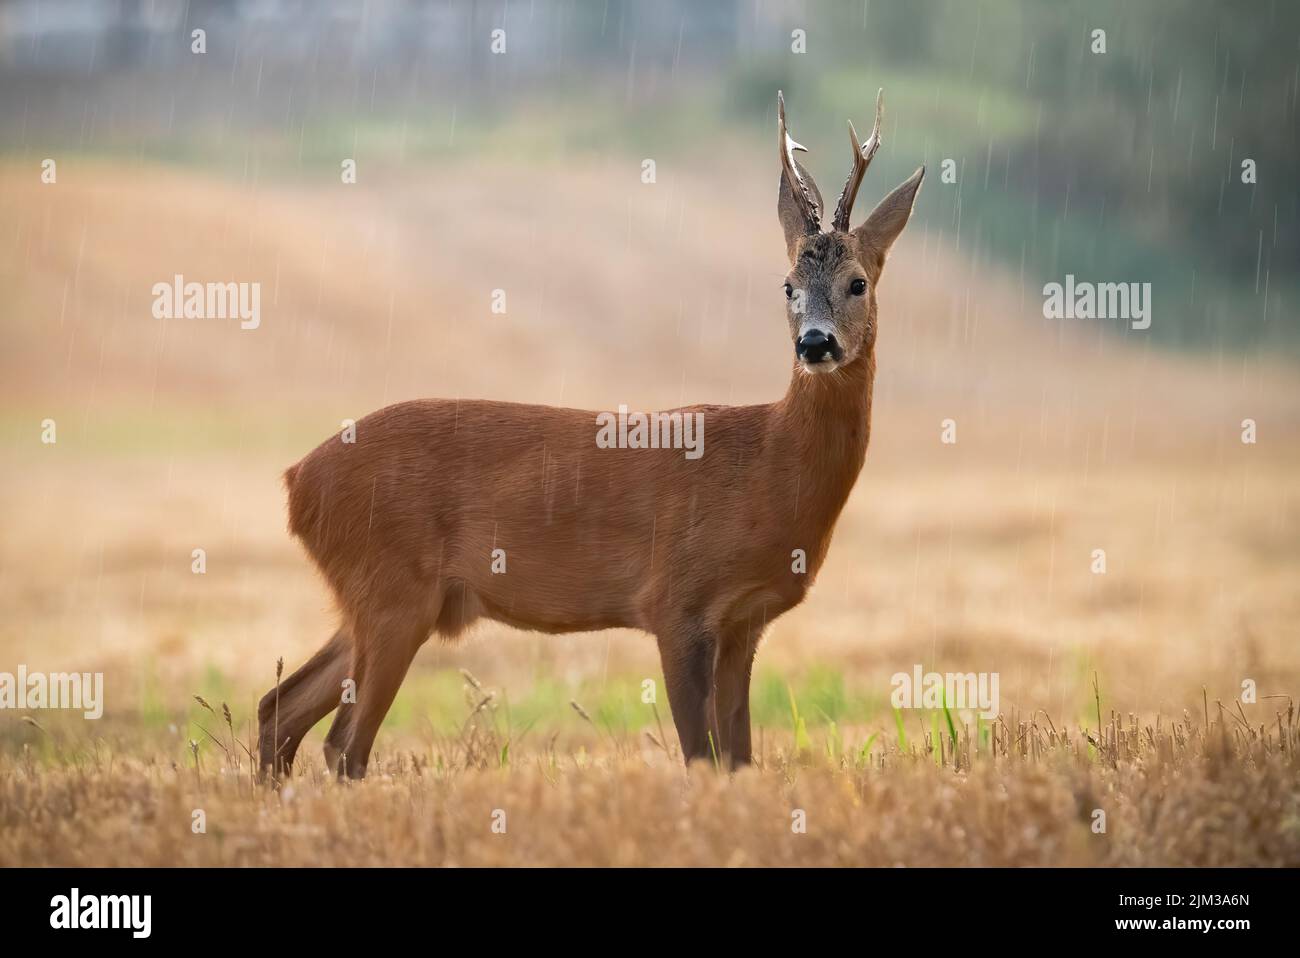 Ciervo ROE, capreolus capreolus, de pie sobre rastrojo durante la lluvia en verano. Ciervo marrón mirando al campo lloviendo. Mamífero masculino observando en pastura i Foto de stock